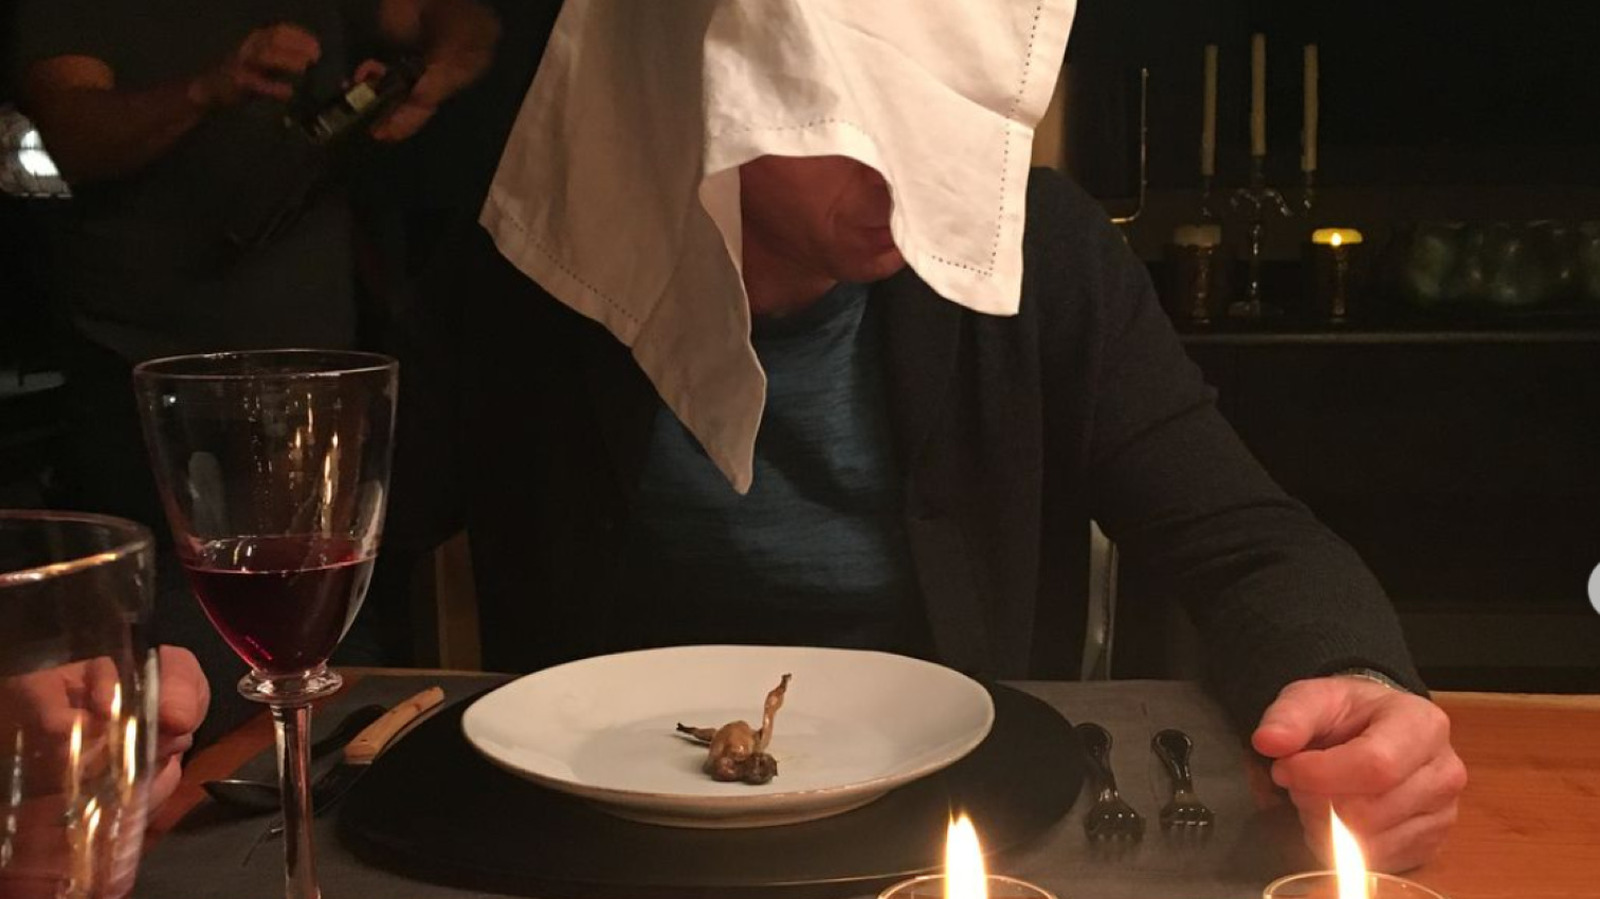 De ce francezii își acoperă capul când mănâncă?